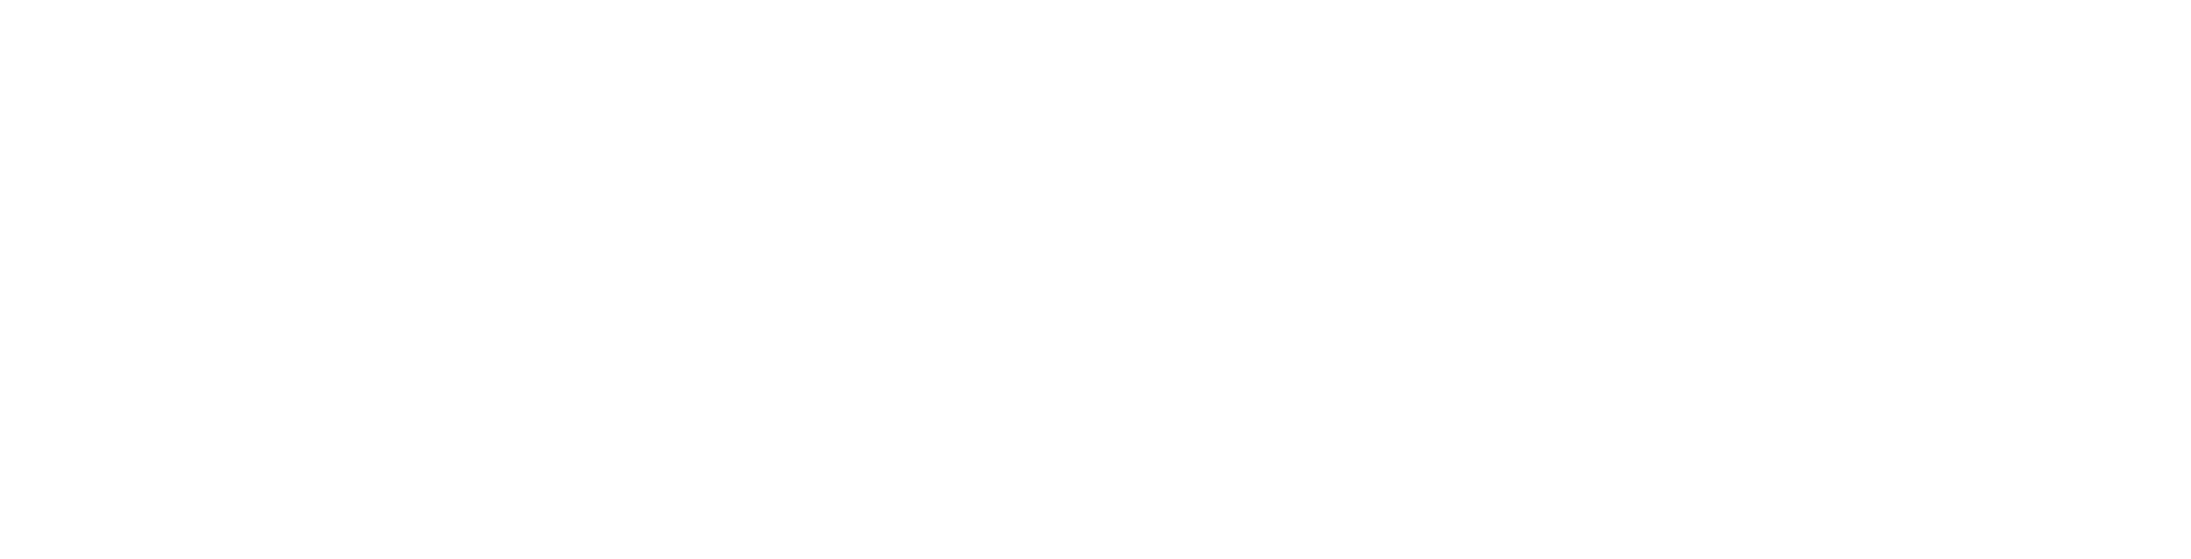 Durasharp Scissors Logo Black And White - Nba Finals Logo White Clipart (2400x2400), Png Download